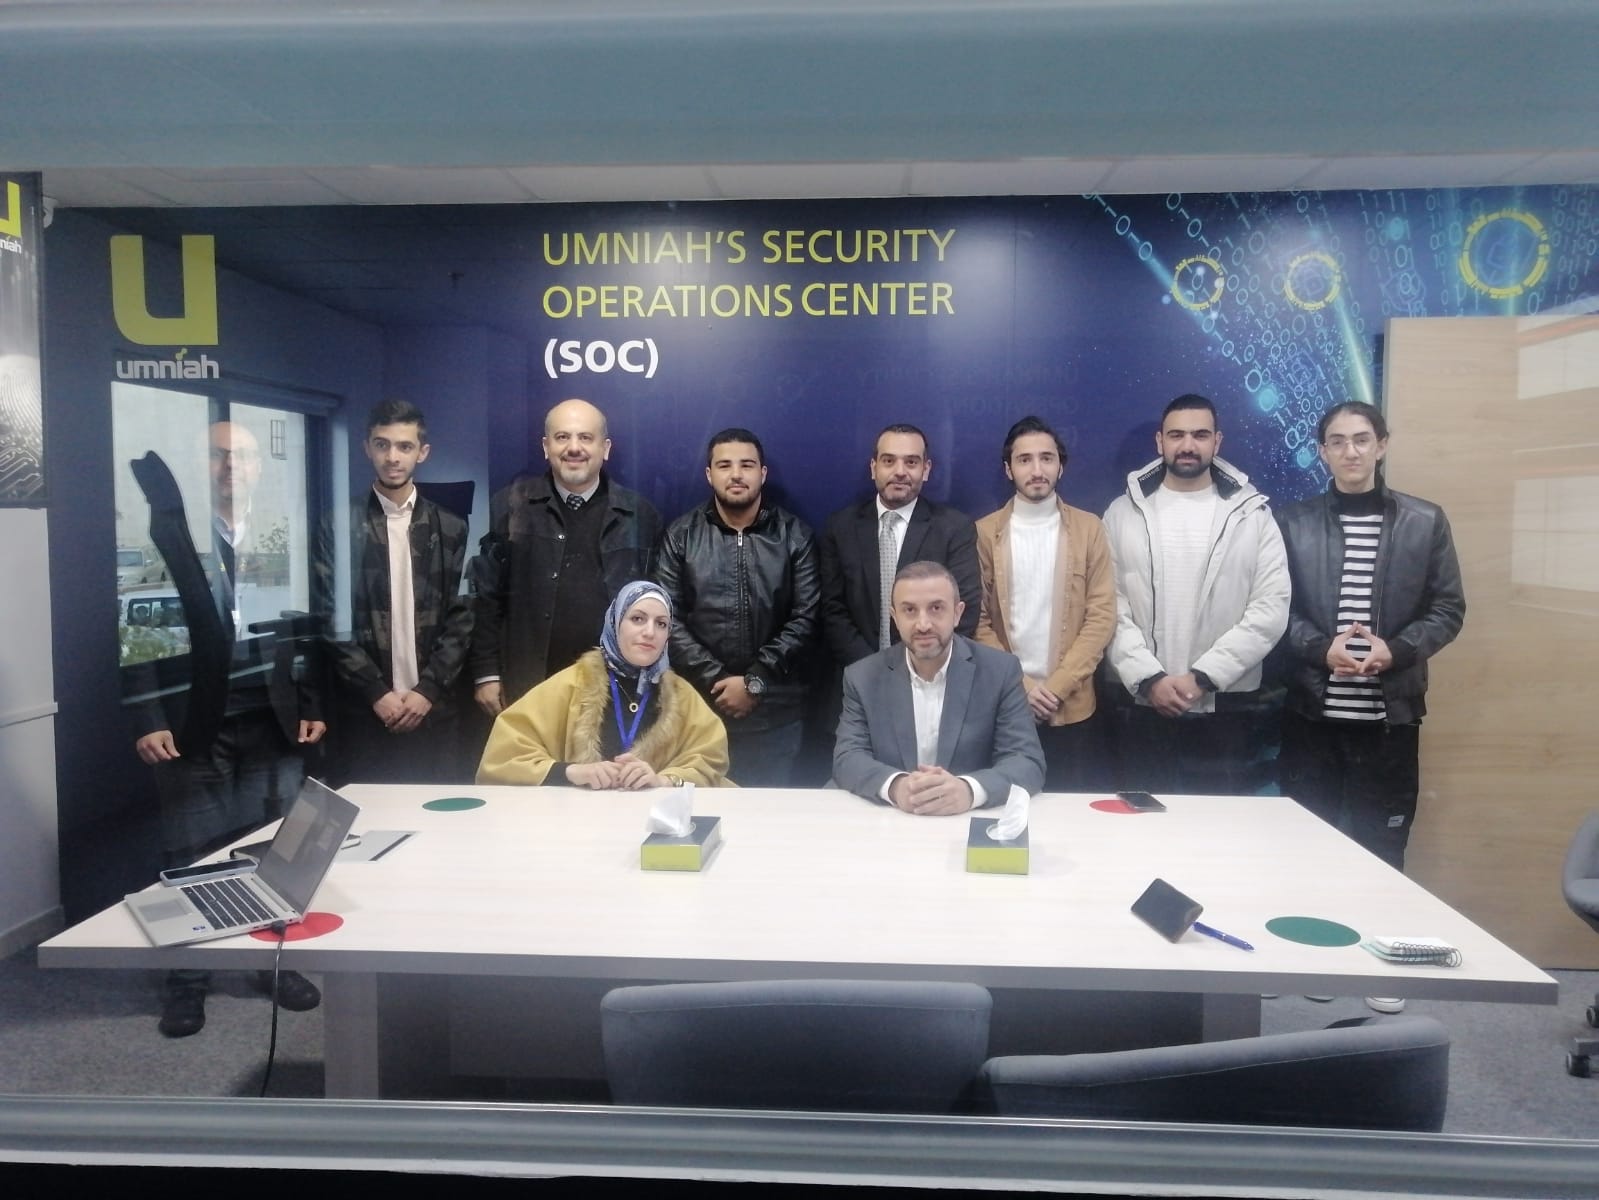 العلوم الحاسوبية والمعلوماتية في "عمان العربية" تنظم زيارة علمية لمركز أمنية لإدارة عمليات الأمن السيبراني (SOC)2